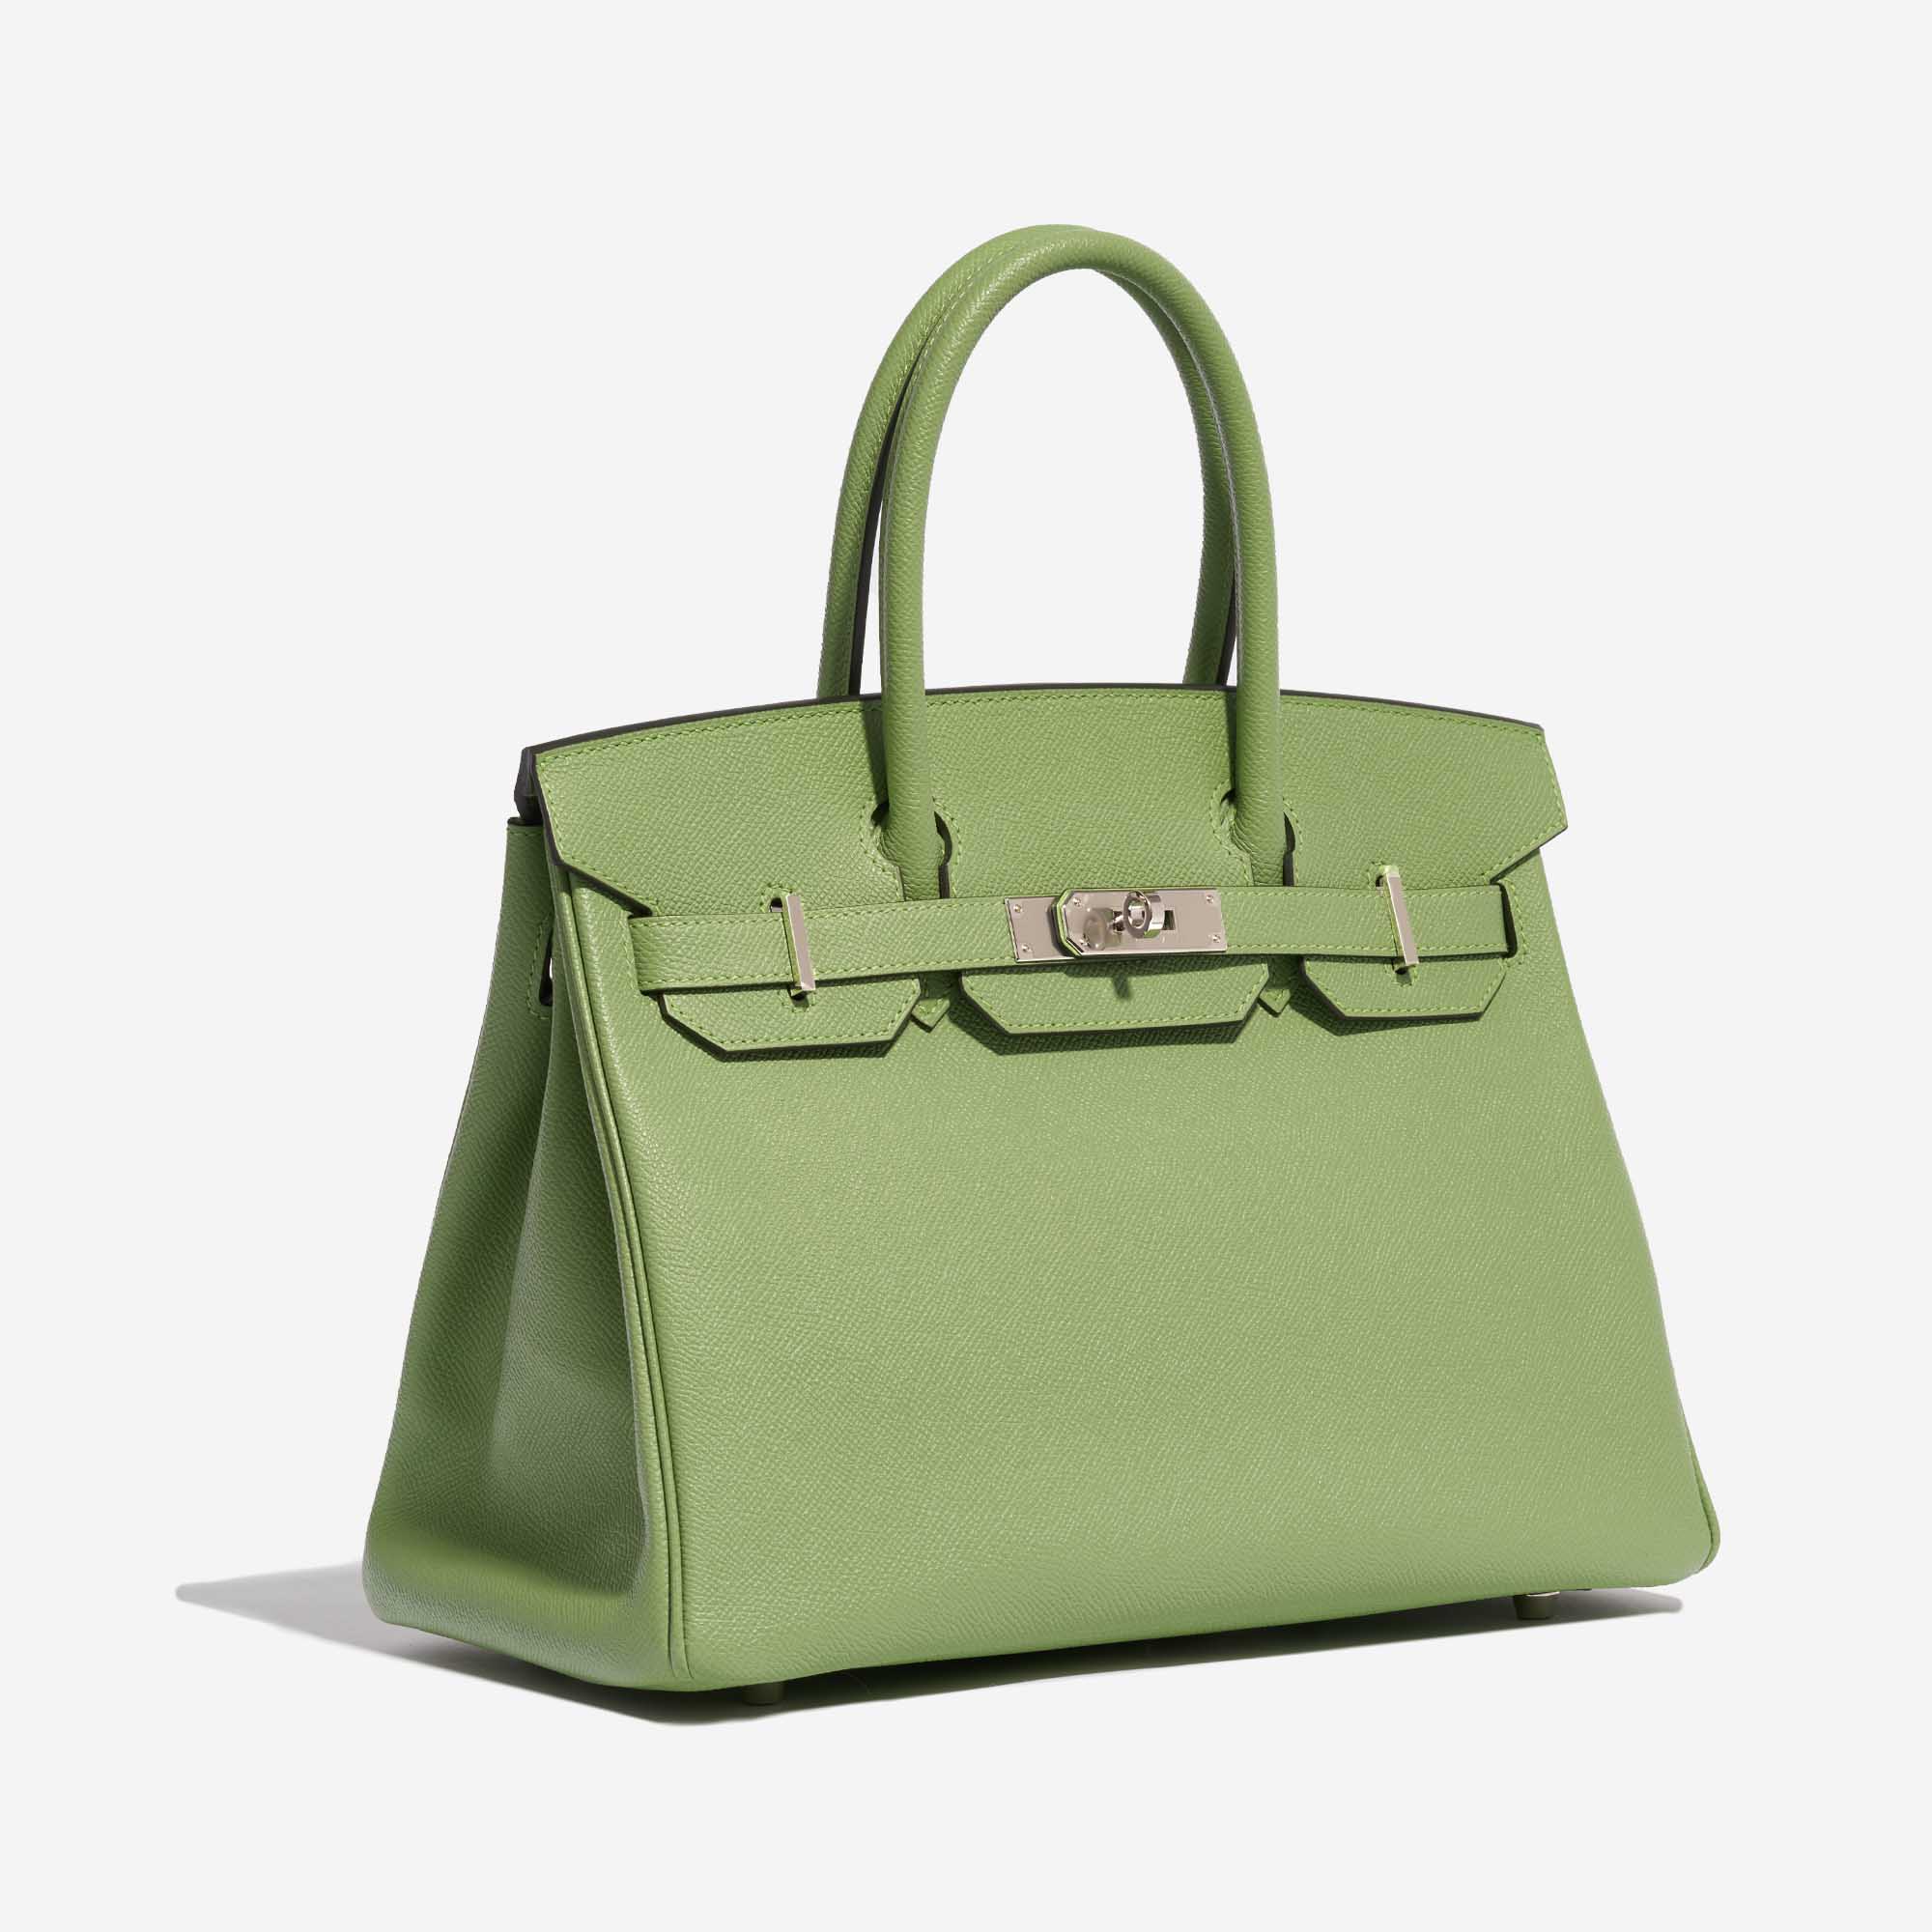 Gebrauchte Hermès Tasche Birkin 30 Epsom Vert Criquet Grün | Verkaufen Sie Ihre Designer-Tasche auf Saclab.com